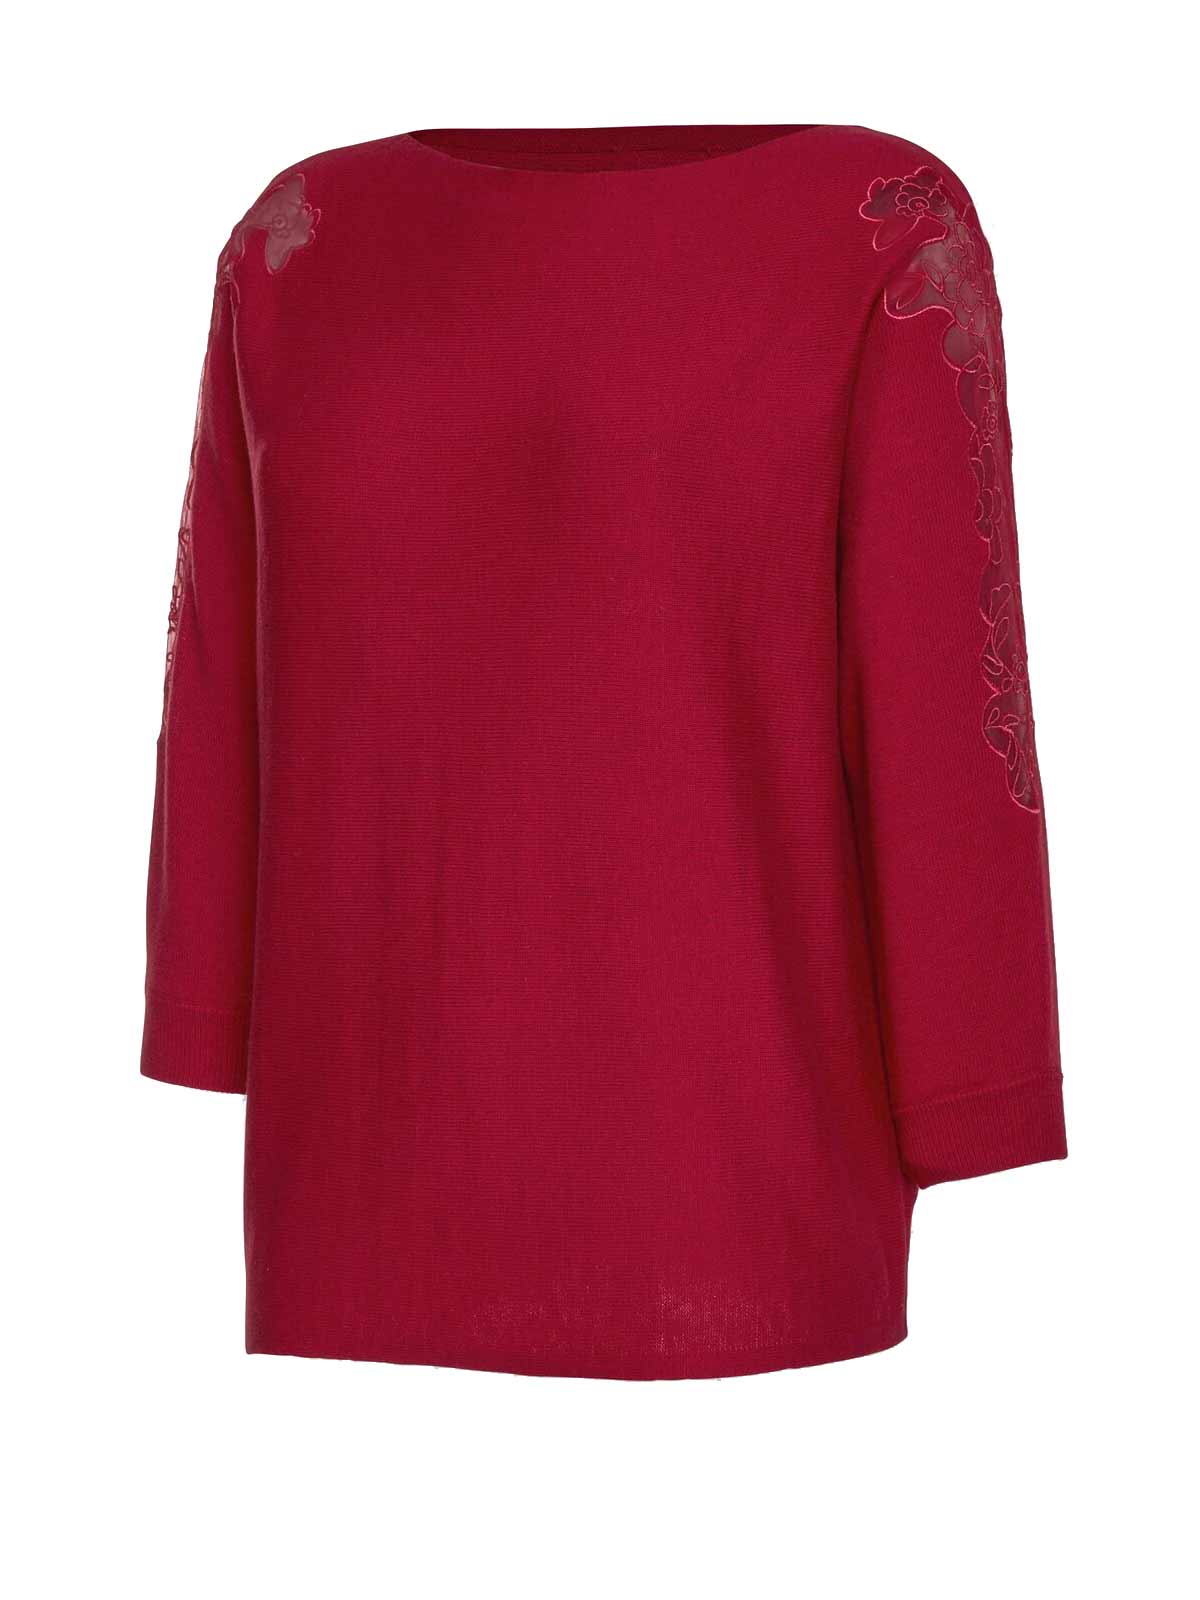 CRéATION L PREMIUM Damen Pullover mit Seide und Spitze, rot